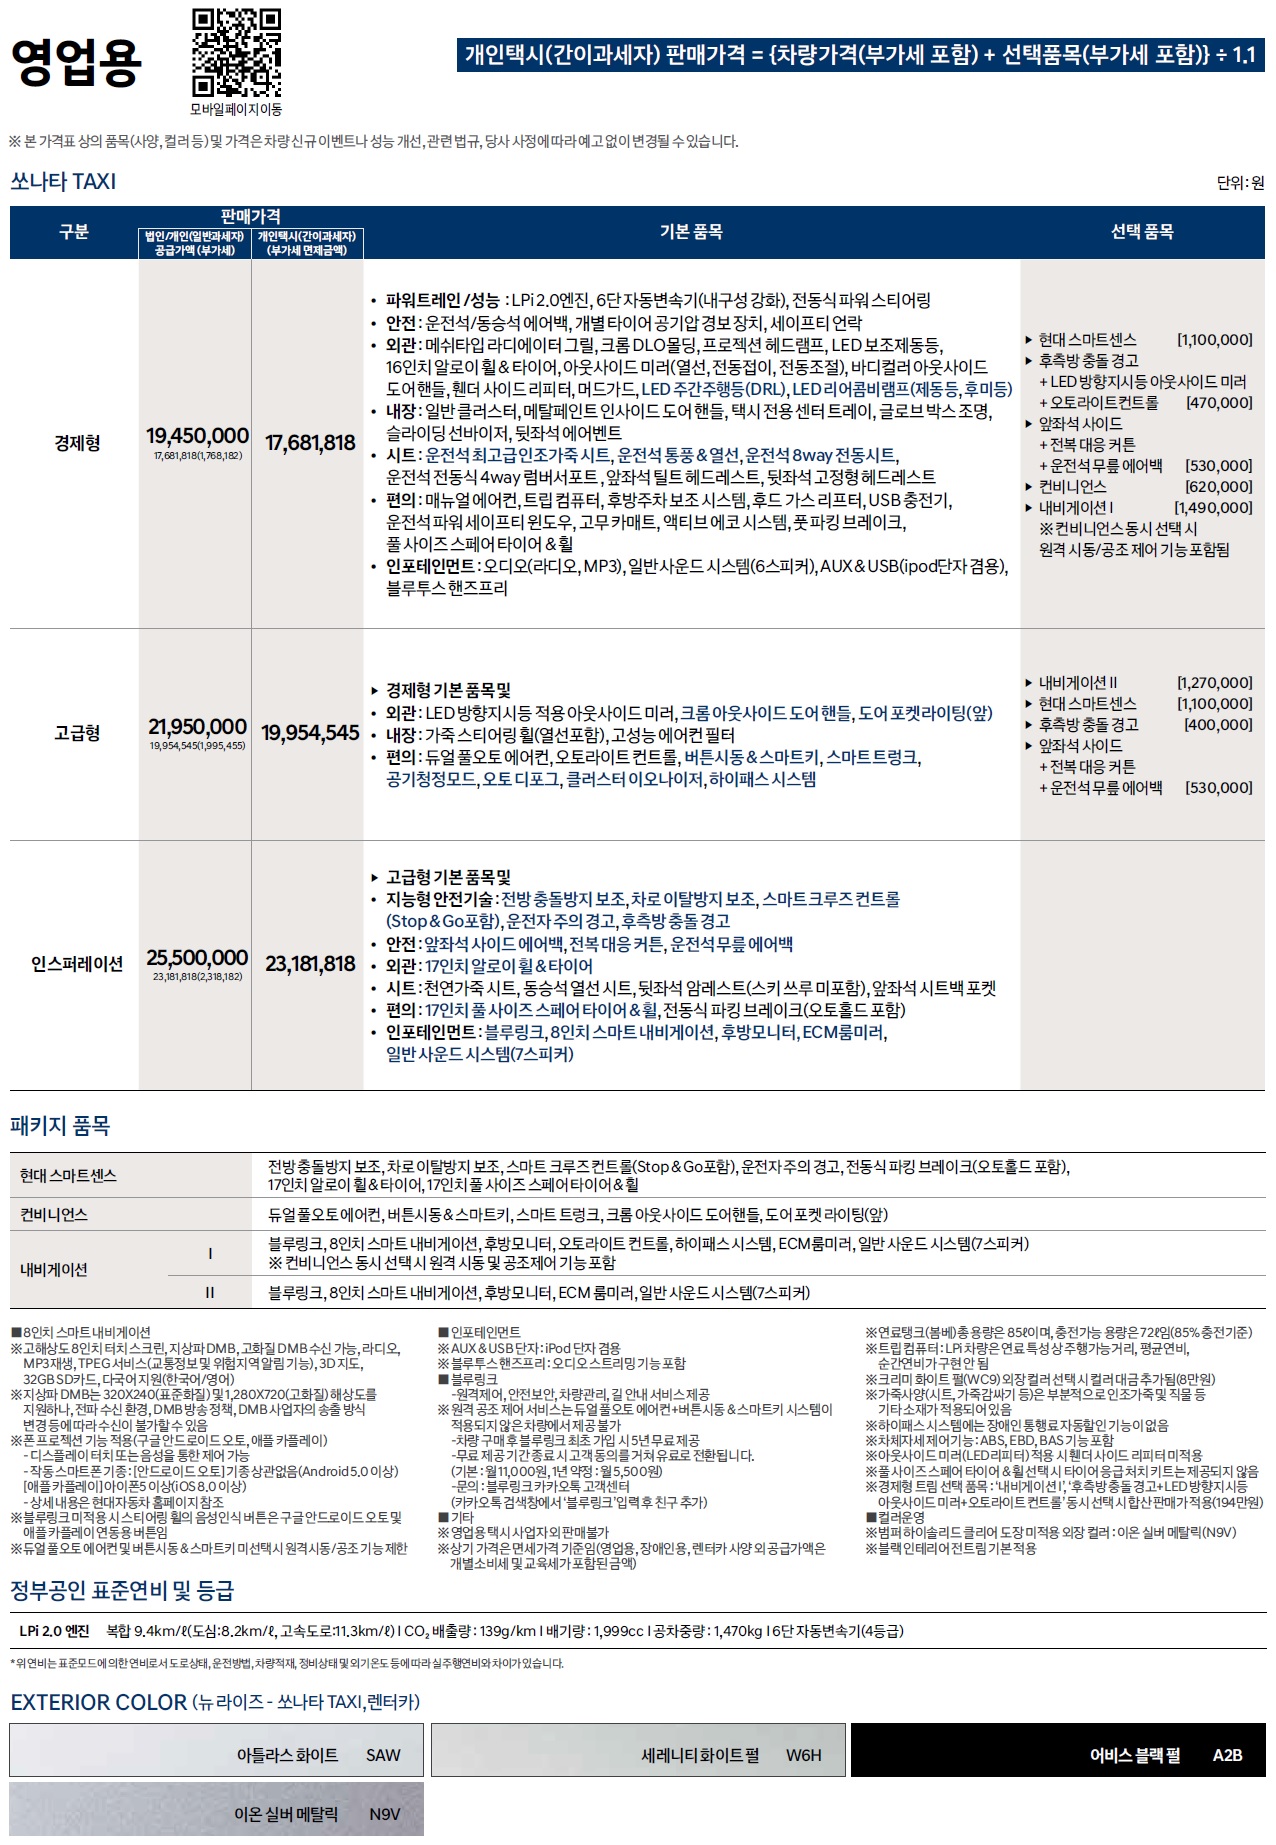 쏘나타 영업용 가격표 - 2022년 07월 -1.jpg